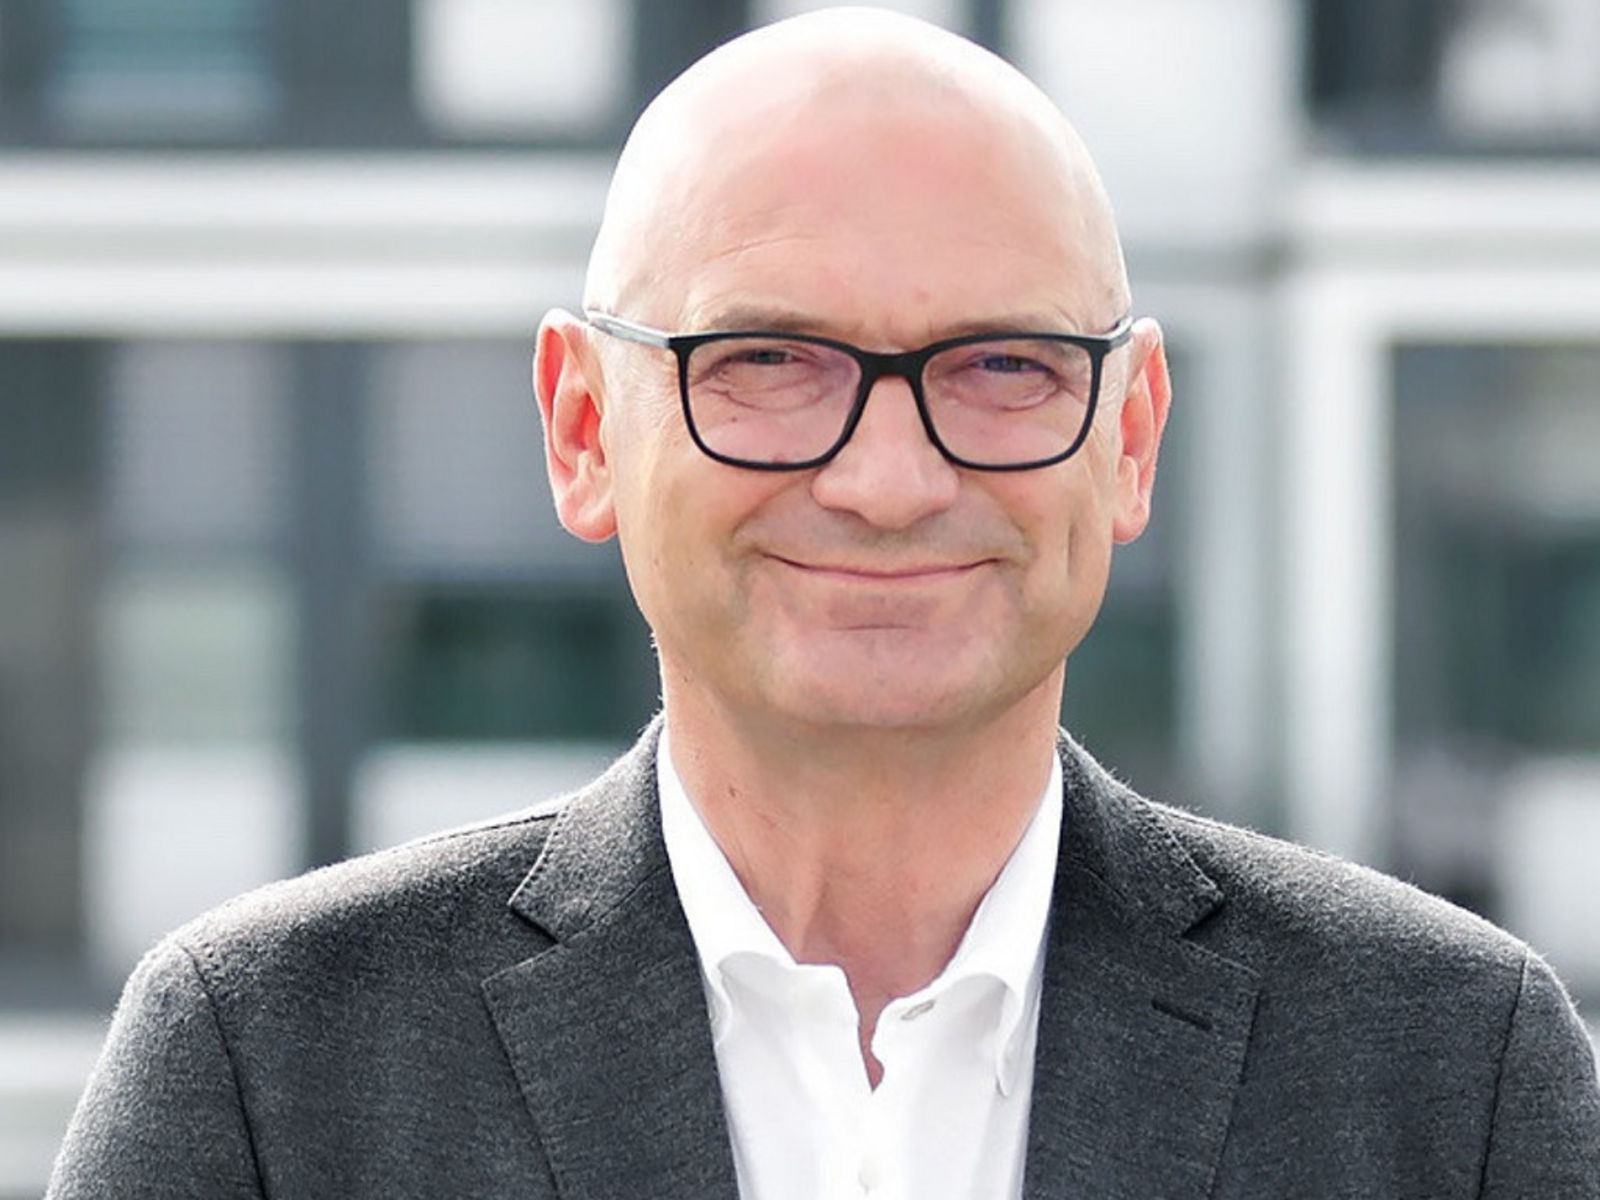 Helios Universitätsklinikum Wuppertal: Prof. Dr. Rudolf Leuwer, Ärztlicher Direktor, 21.11.2018